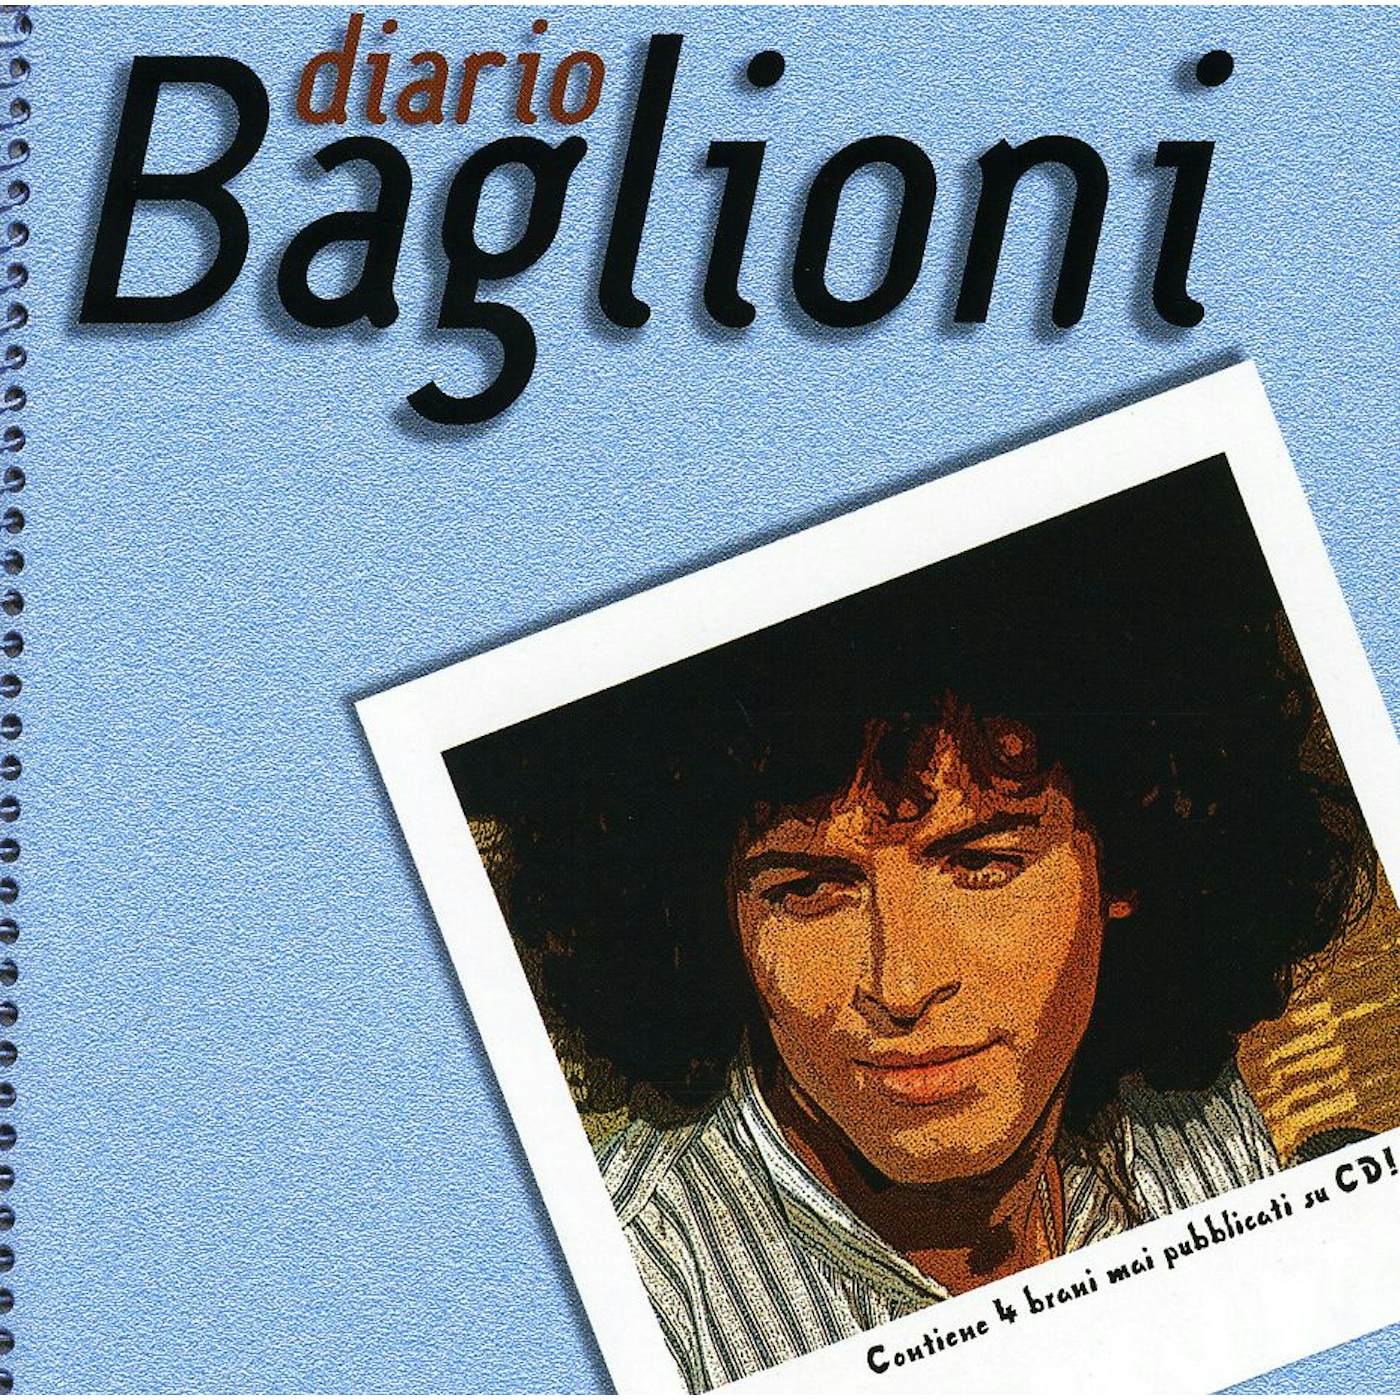 Claudio Baglioni DIARIO BAGLIONI CD